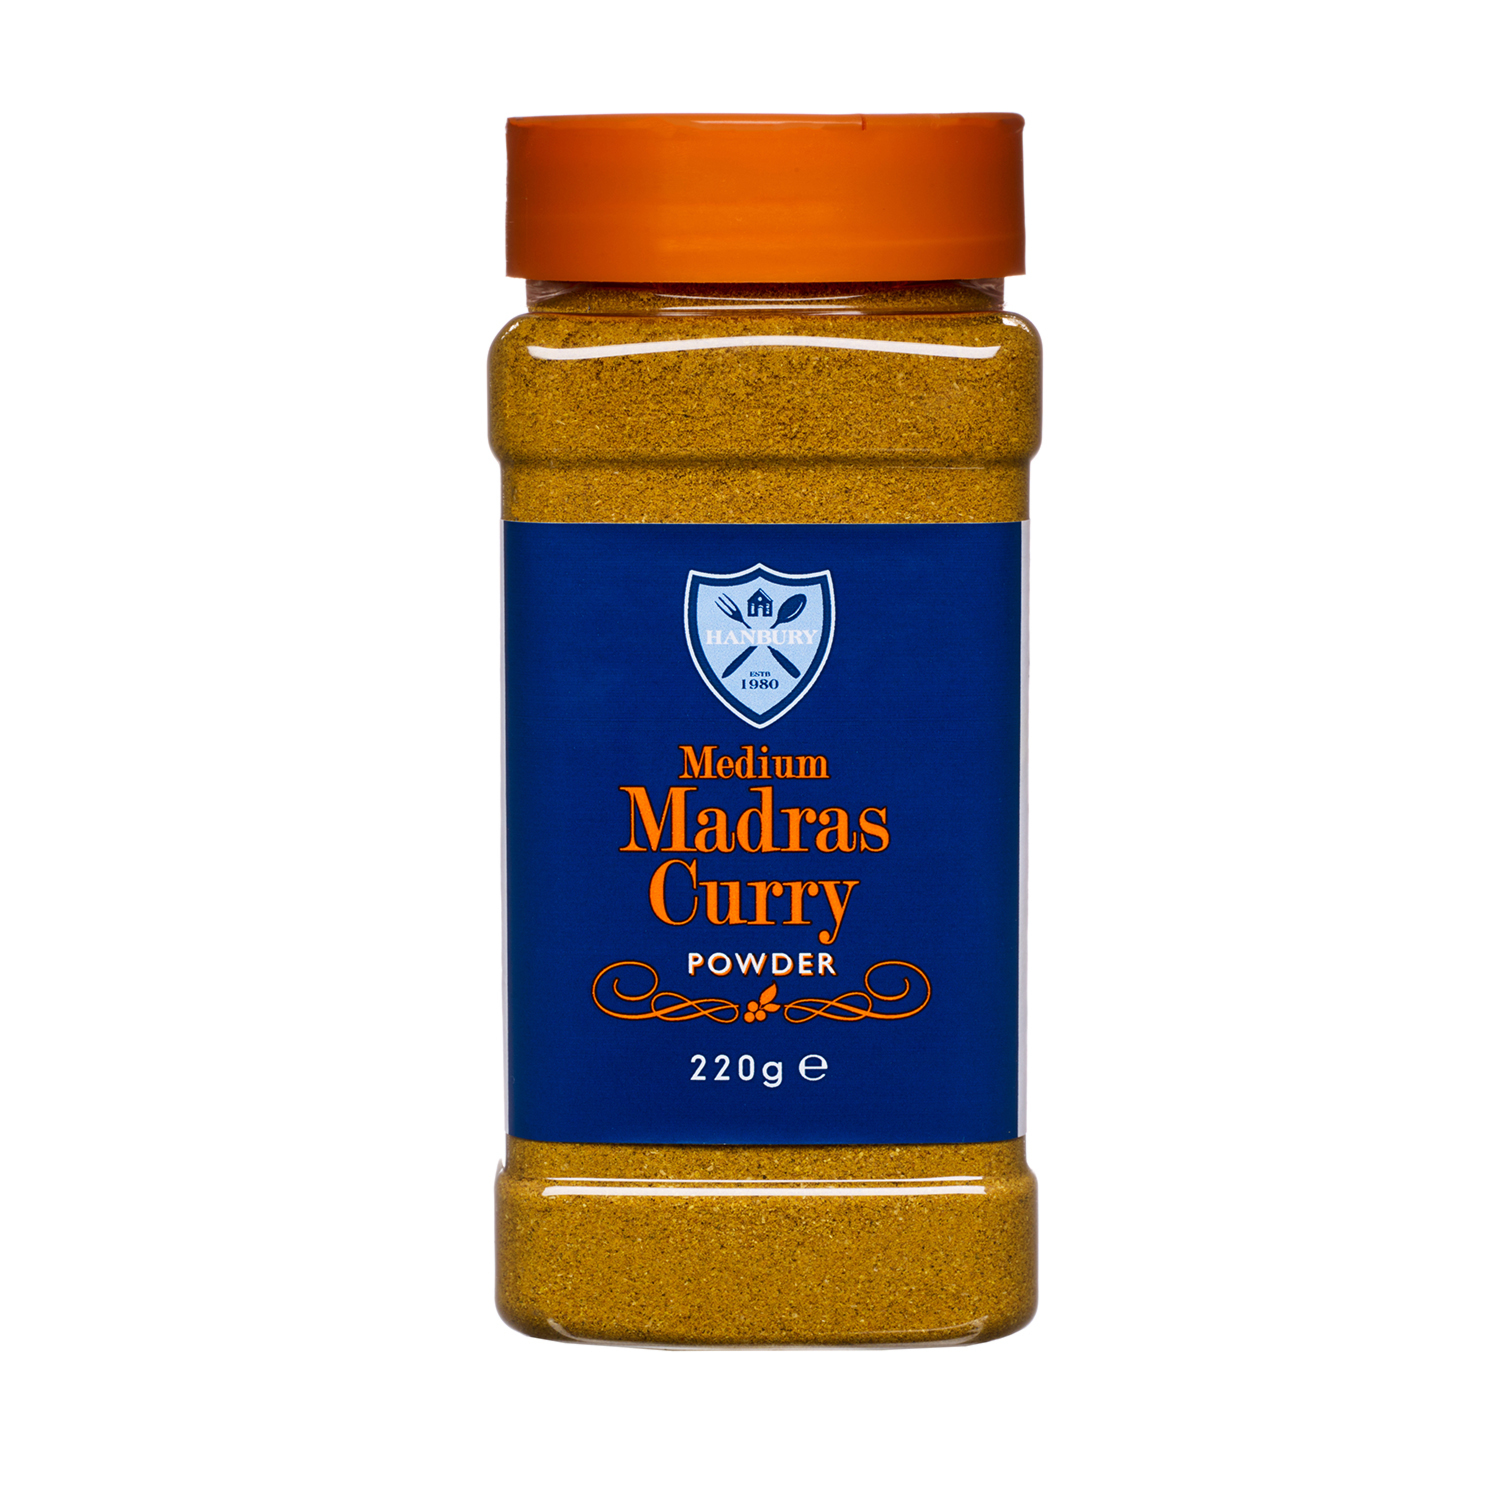 Madras Curry Powder Image